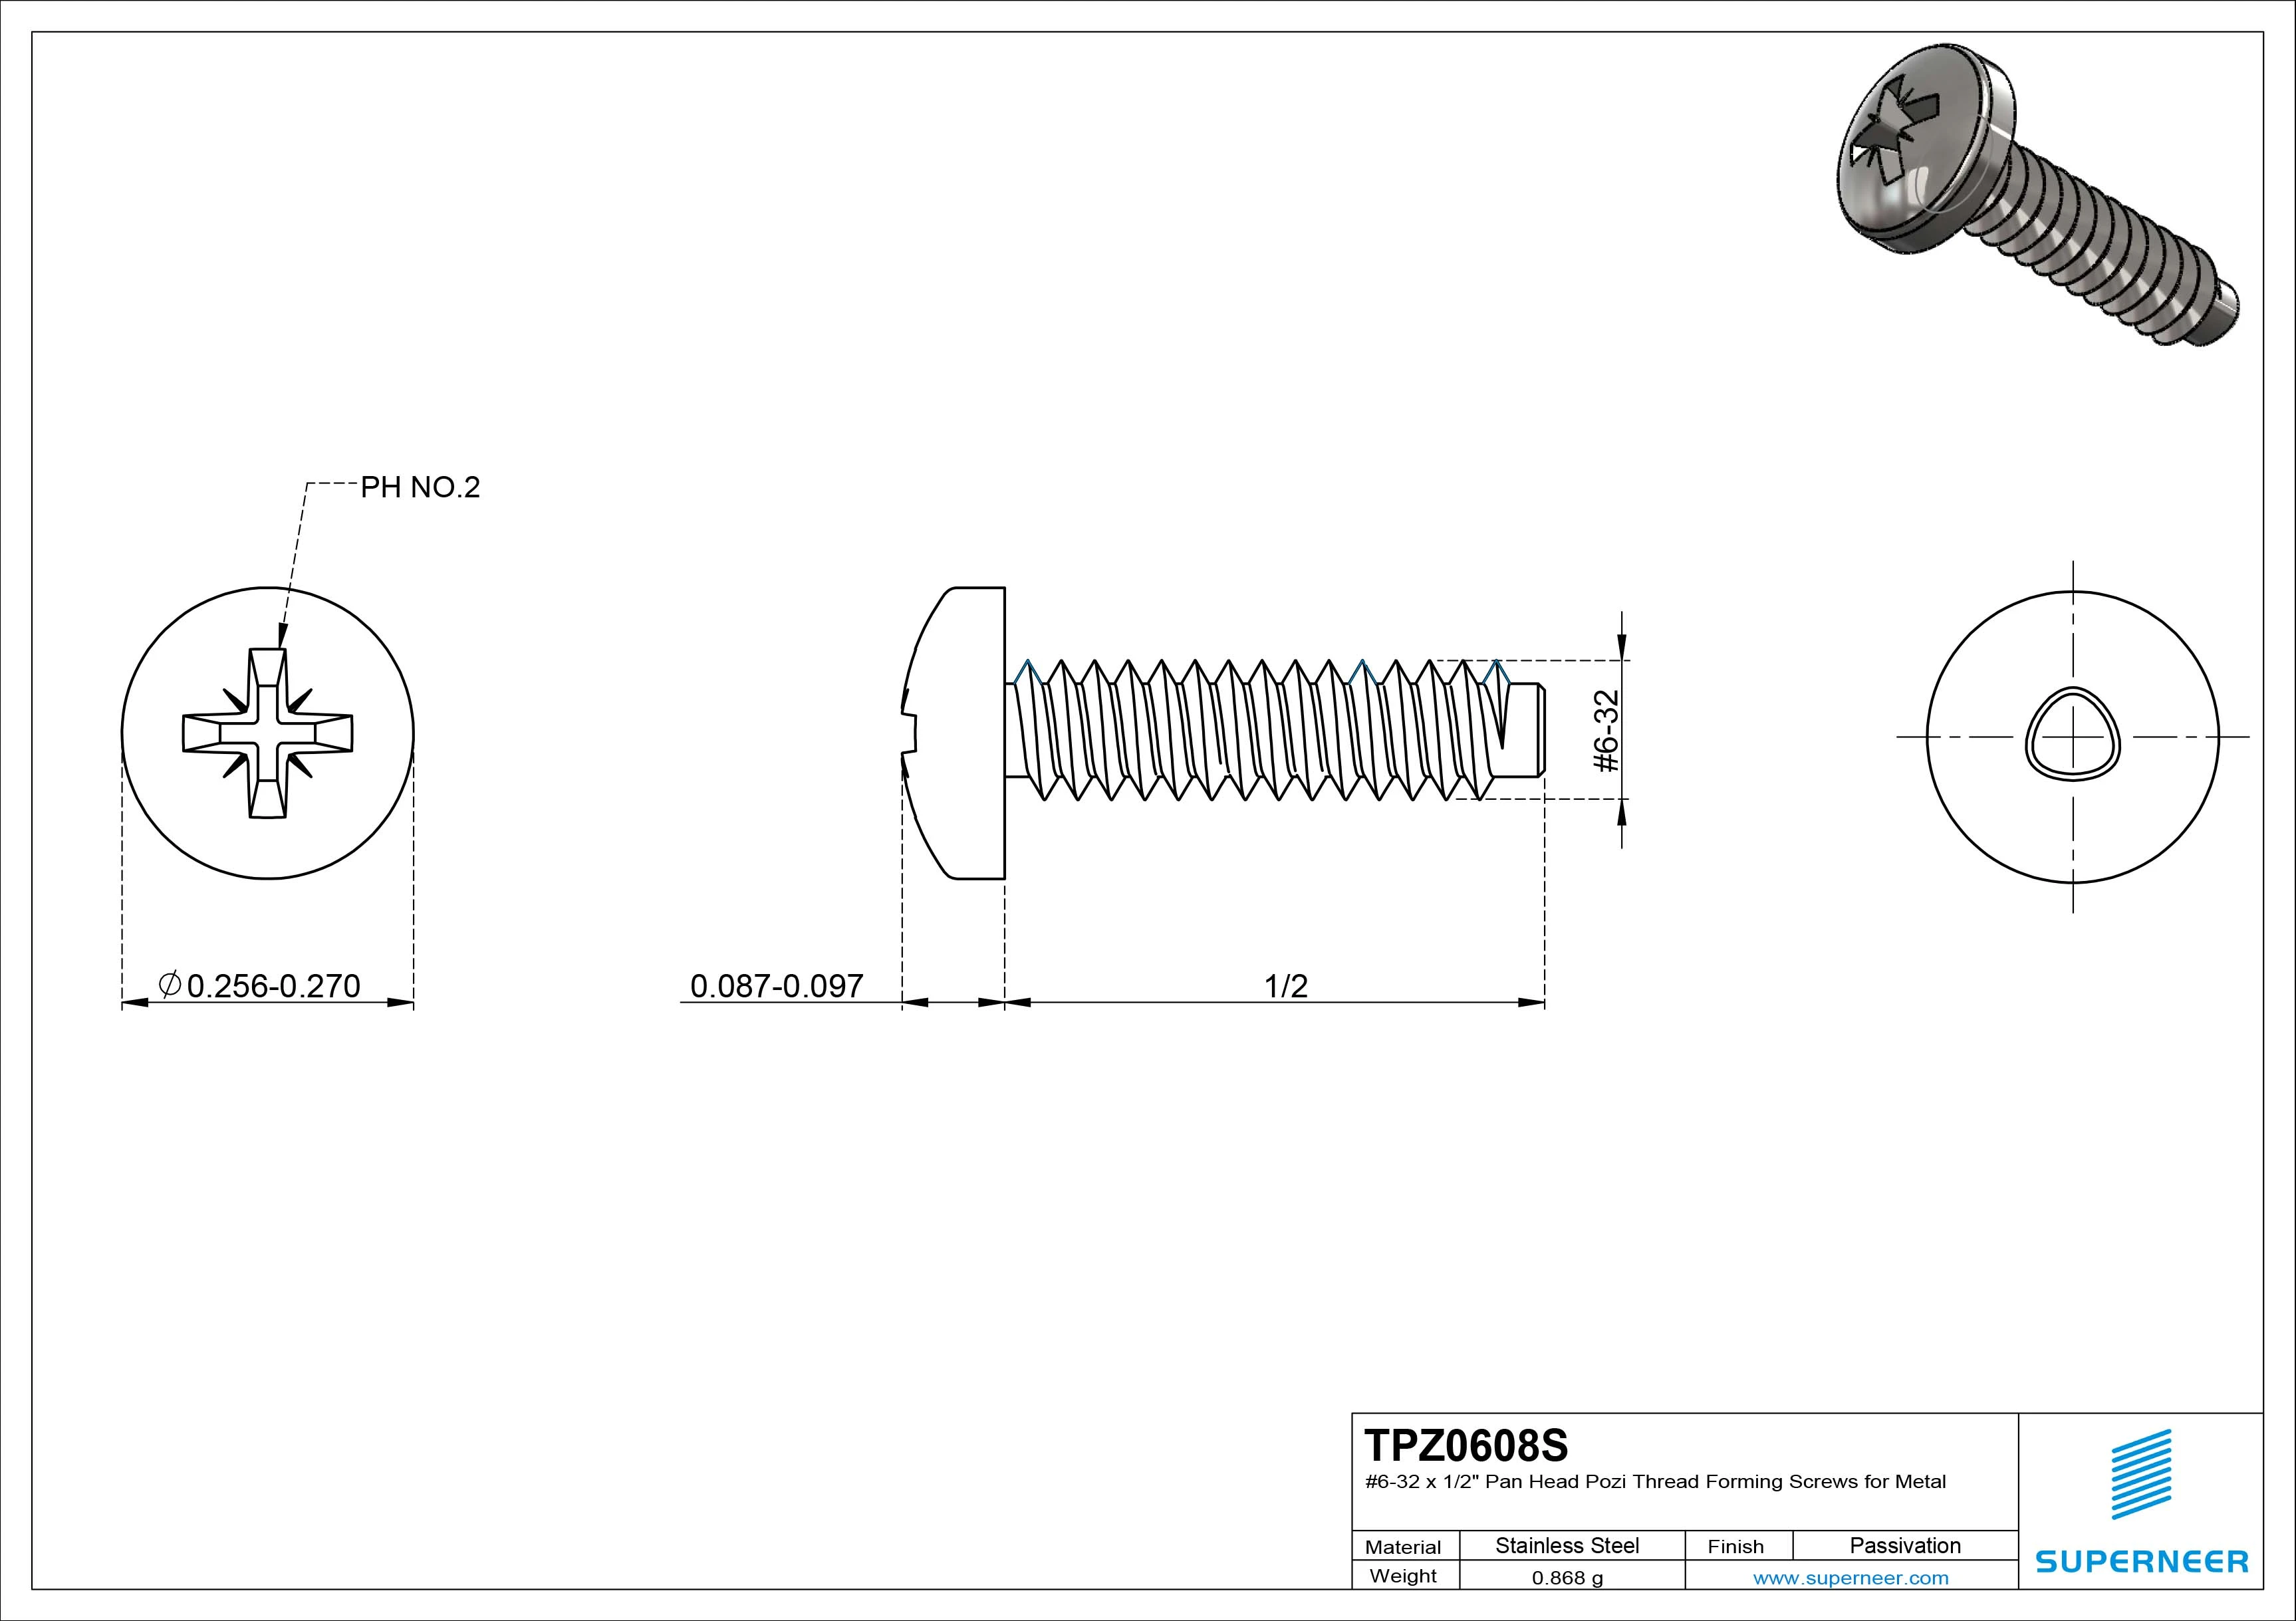 6-32 × 1/2 Pan Head Pozi Thread Forming  Screws for Metal  SUS304 Stainless Steel Inox